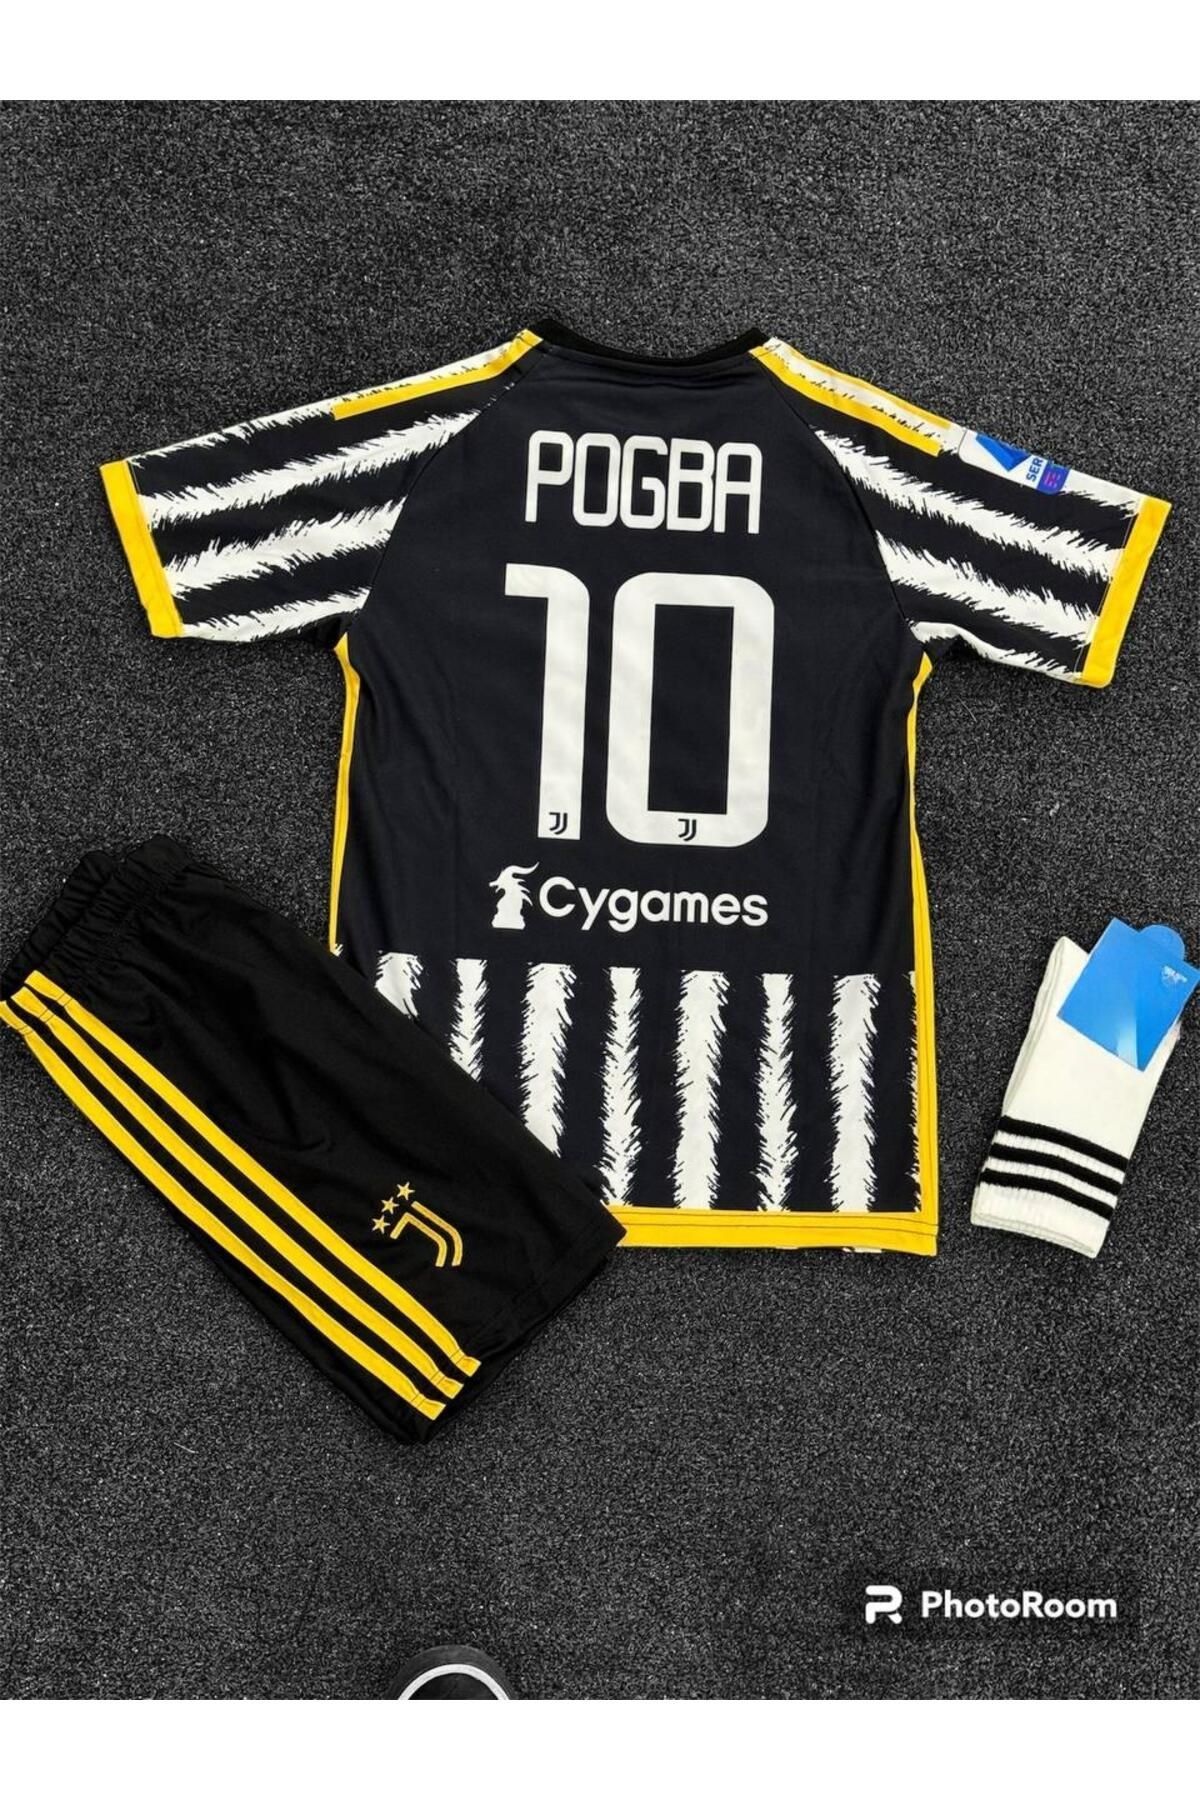 Alaturka Mix Juventus Pogba Yeni Sezon Çocuk Futbol Forması 3'lü Takım (forma-şort-çorap(